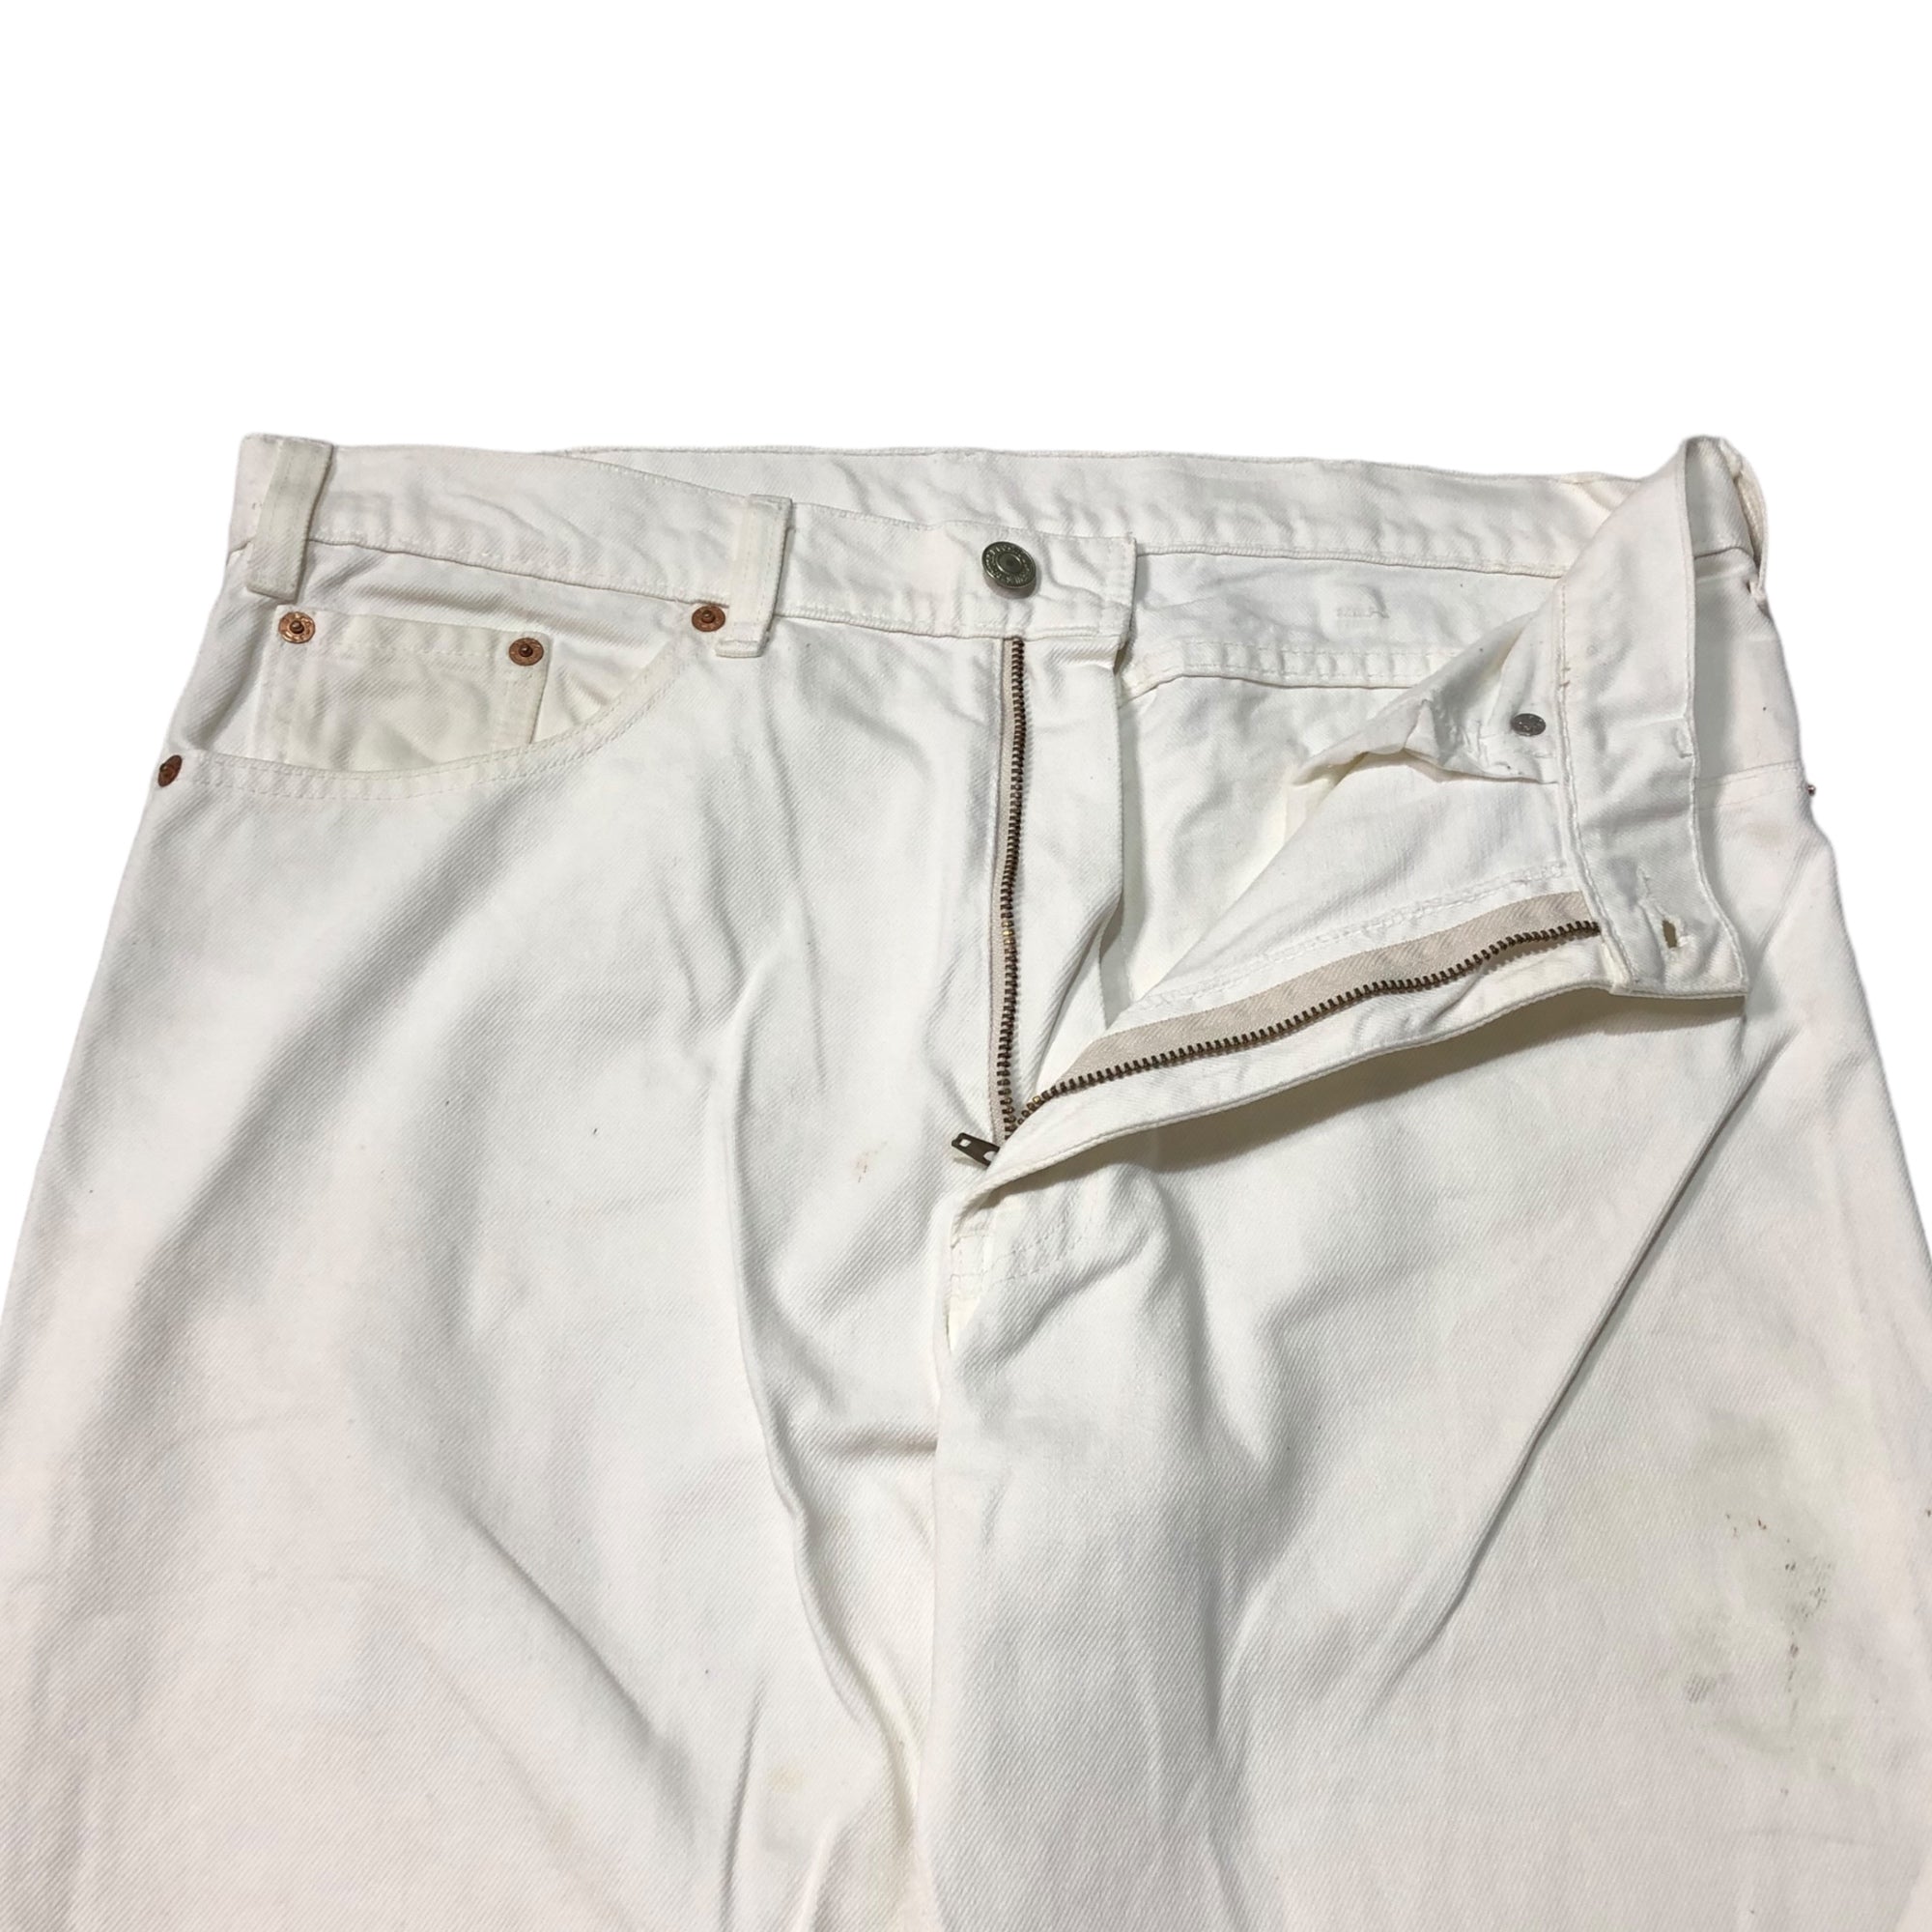 Levi's(リーバイス) 80's  straight white denim pants ストレート ホワイト デニム パンツ 525-03 W34 ホワイト ヴィンテージ 80年代